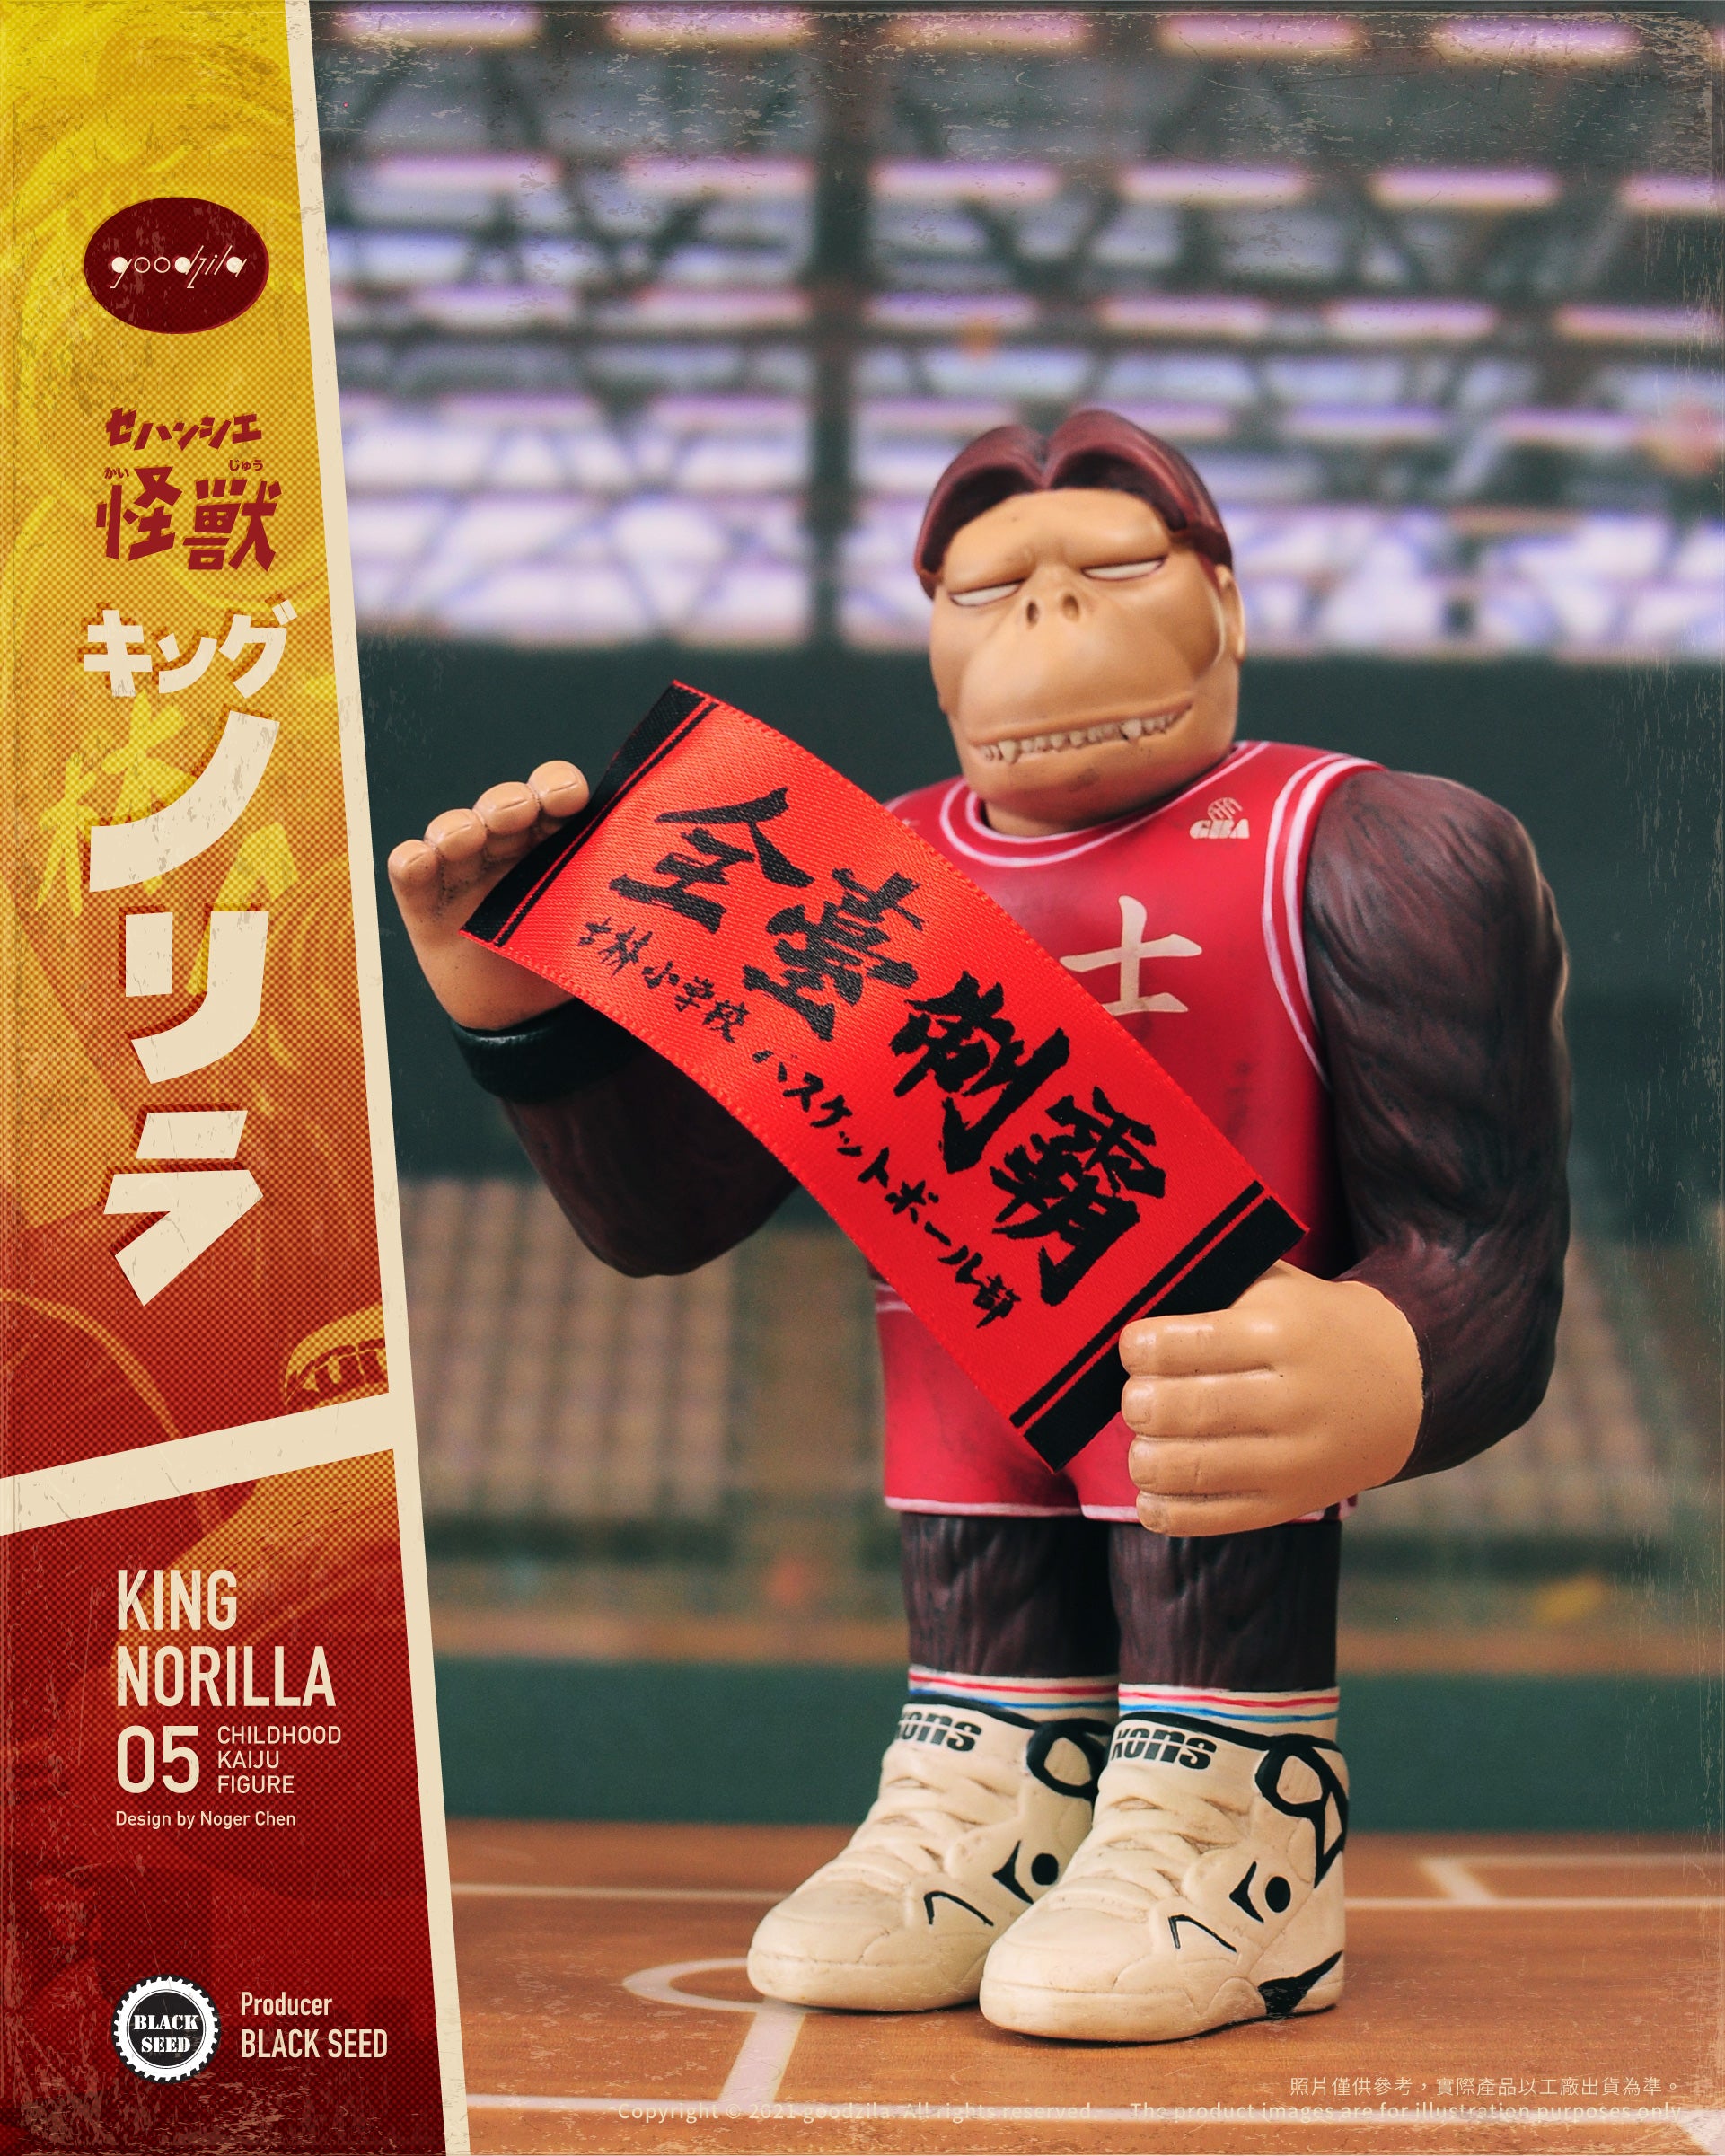 King Norilla by Noger Chen Nog Toy